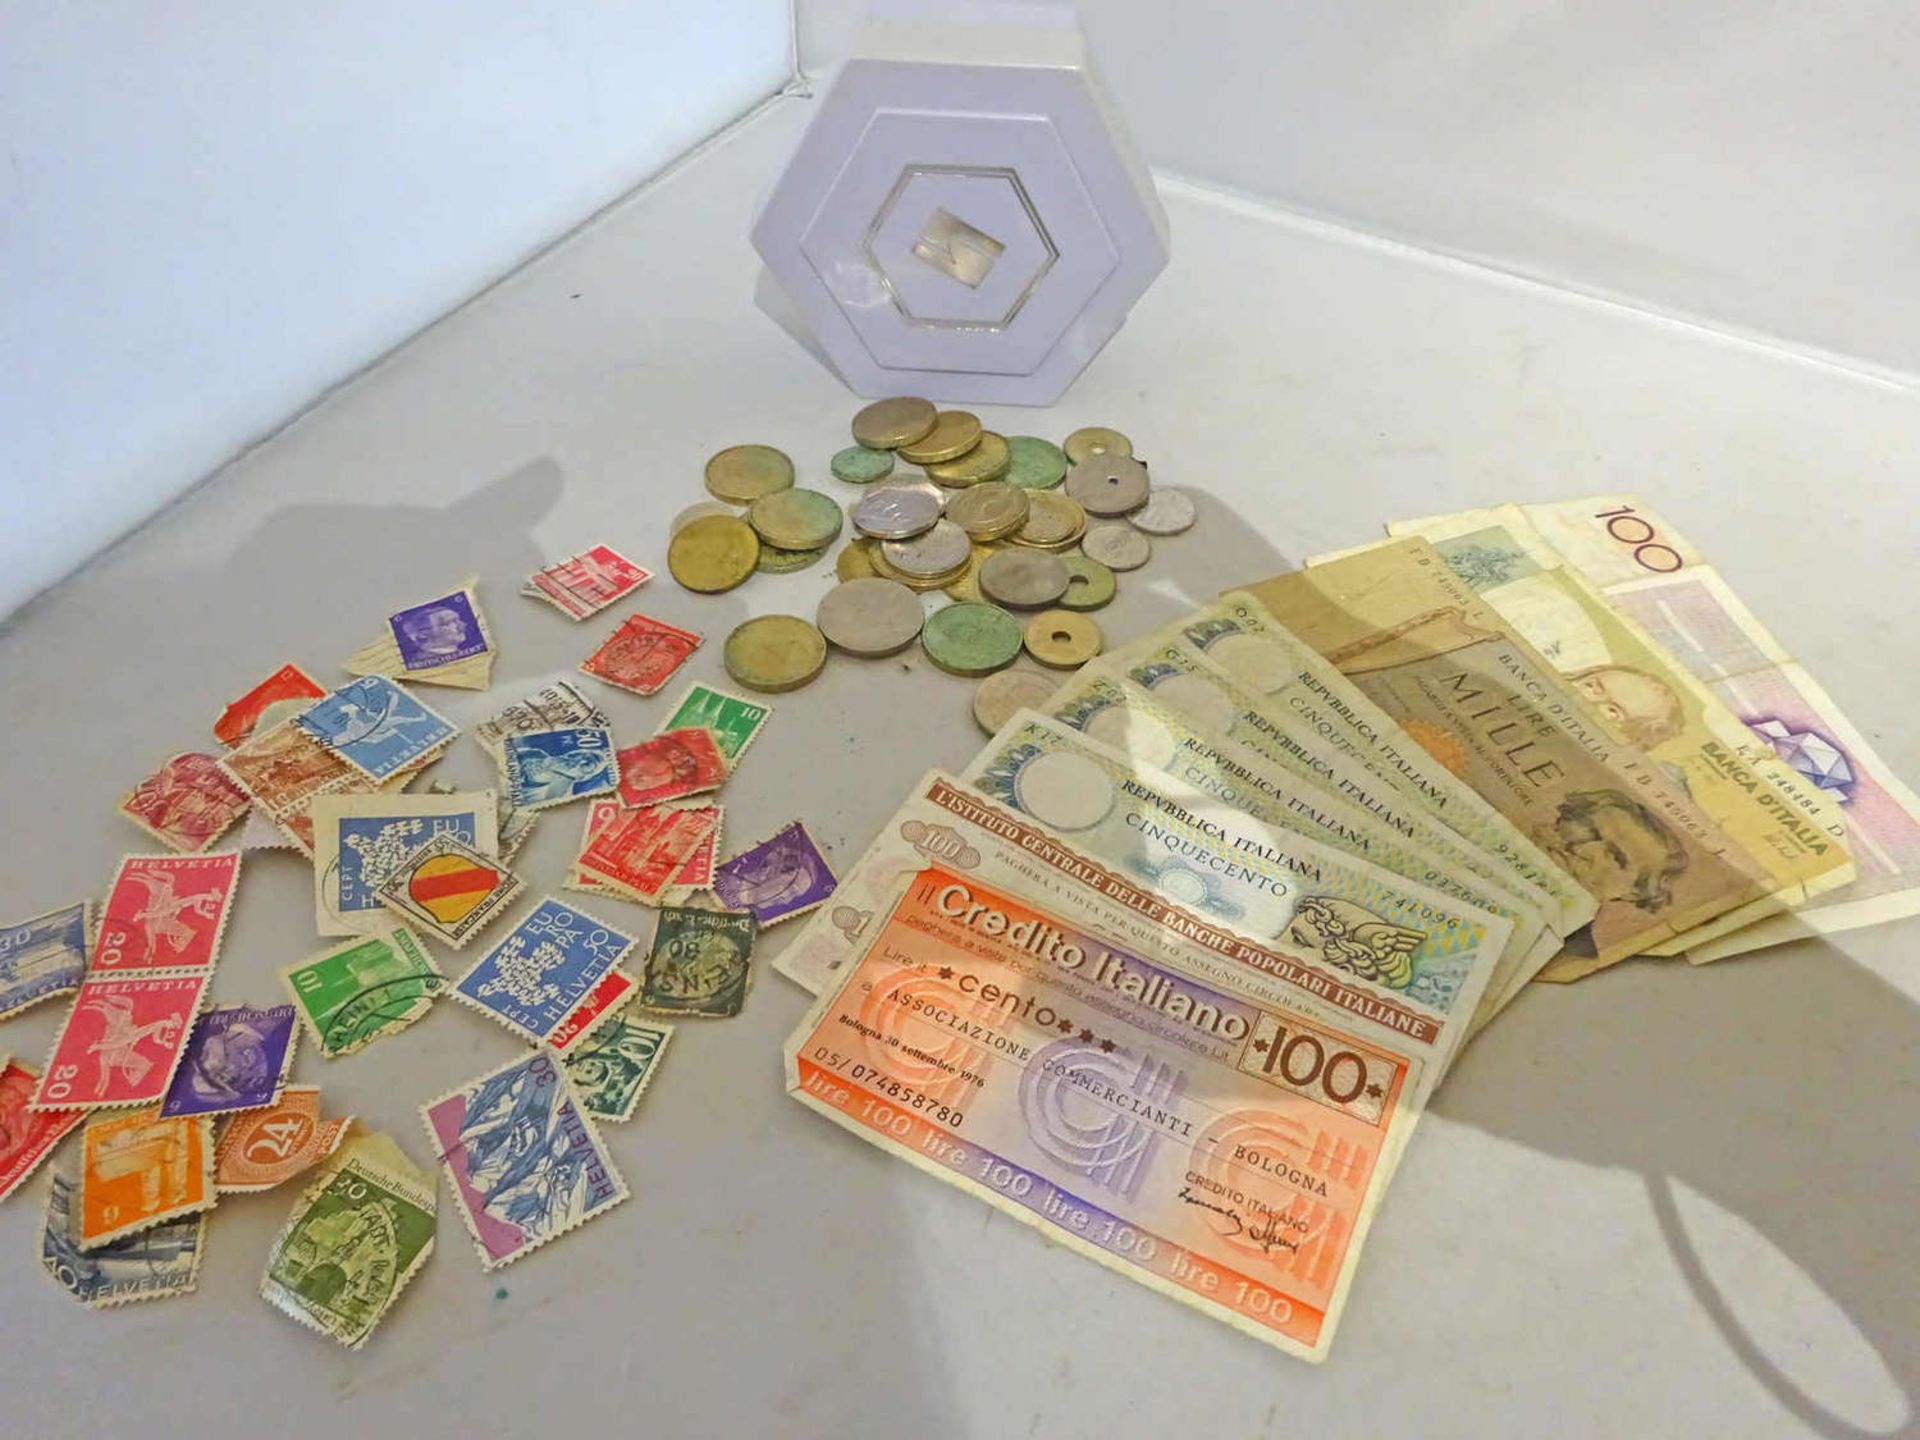 Lot Banknoten, Münzen und Briefmarken aus Haushaltsauflösung. Banknoten Italien und Belgien. Bitte